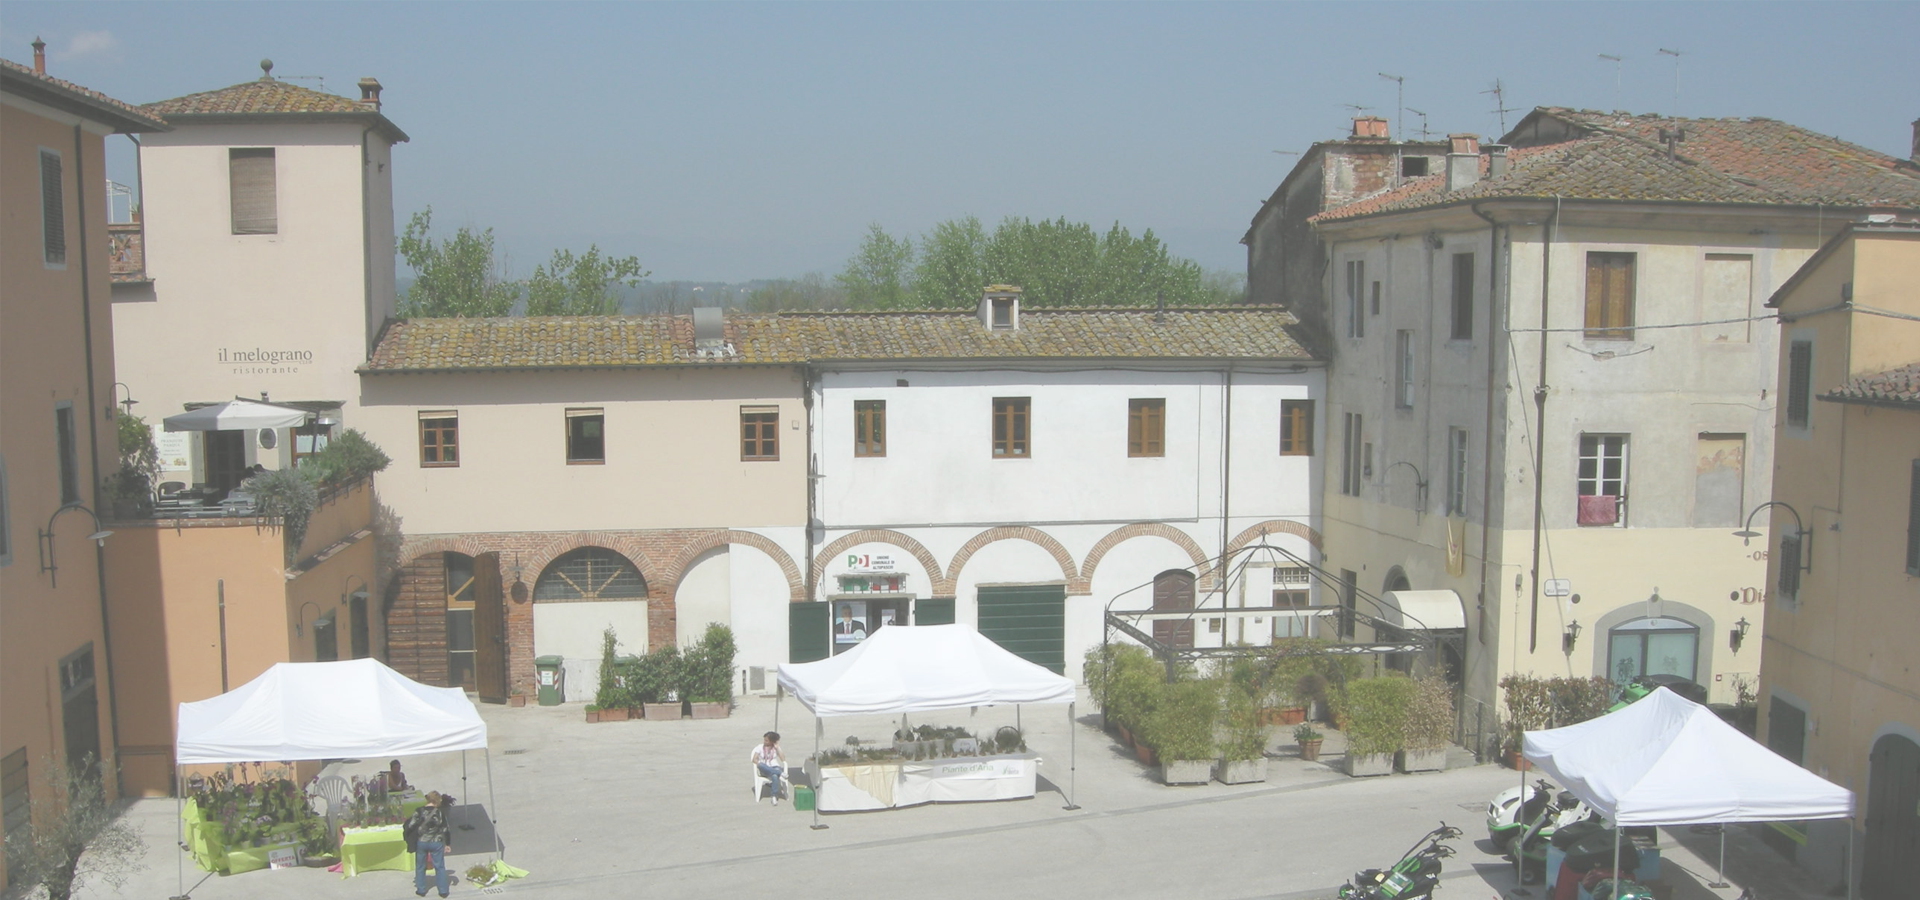 <b>Altopascio, Province of Lucca, Tuscany Region, Italy</b>